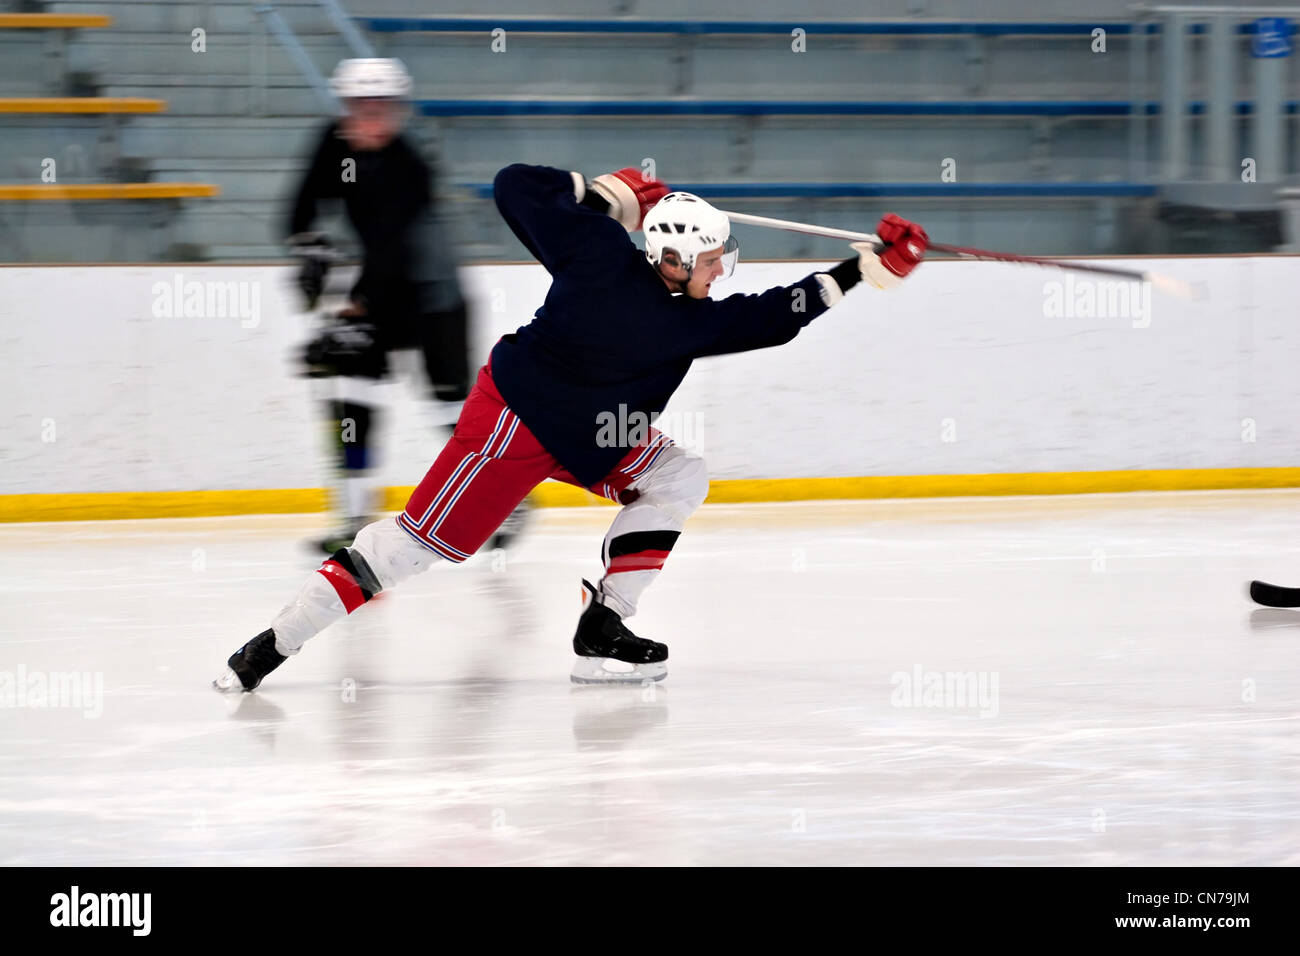 Un joueur de hockey tir la rondelle comme il accélère vers le bas la glace. Léger flou. Banque D'Images